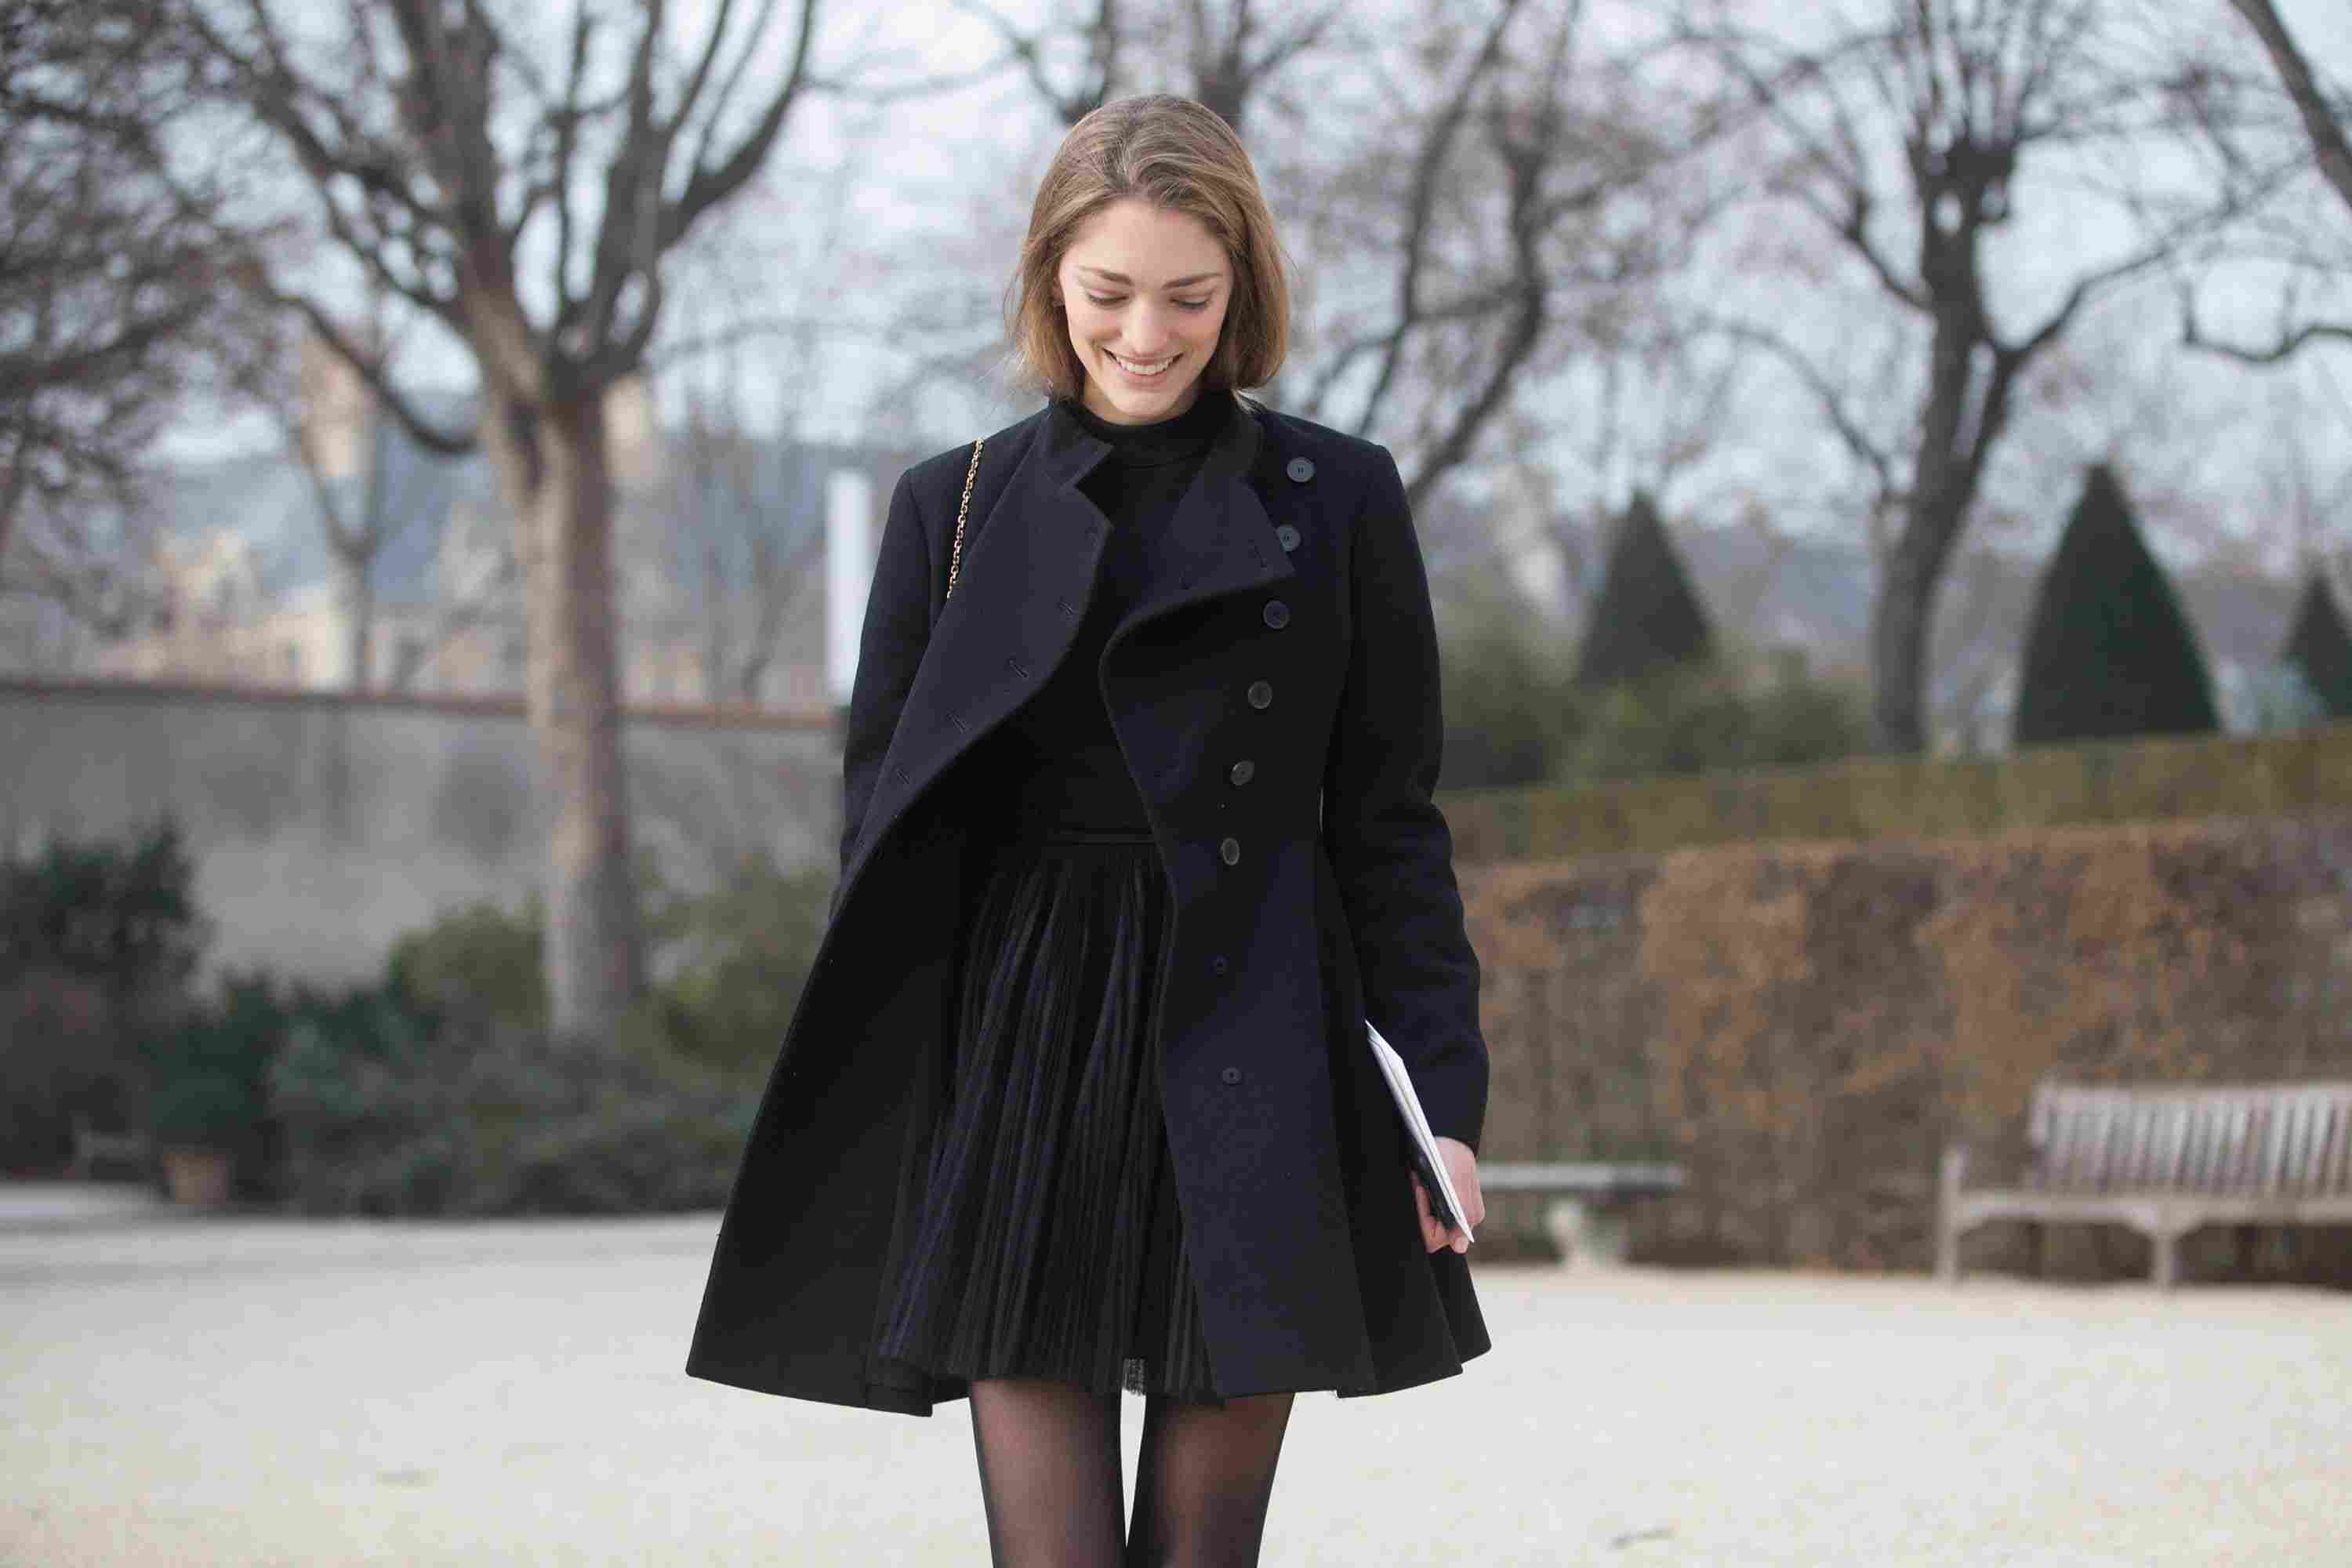 Schwarzes Kleid Kombinieren Im Herbst 50 Outfits Fur Den Alltag